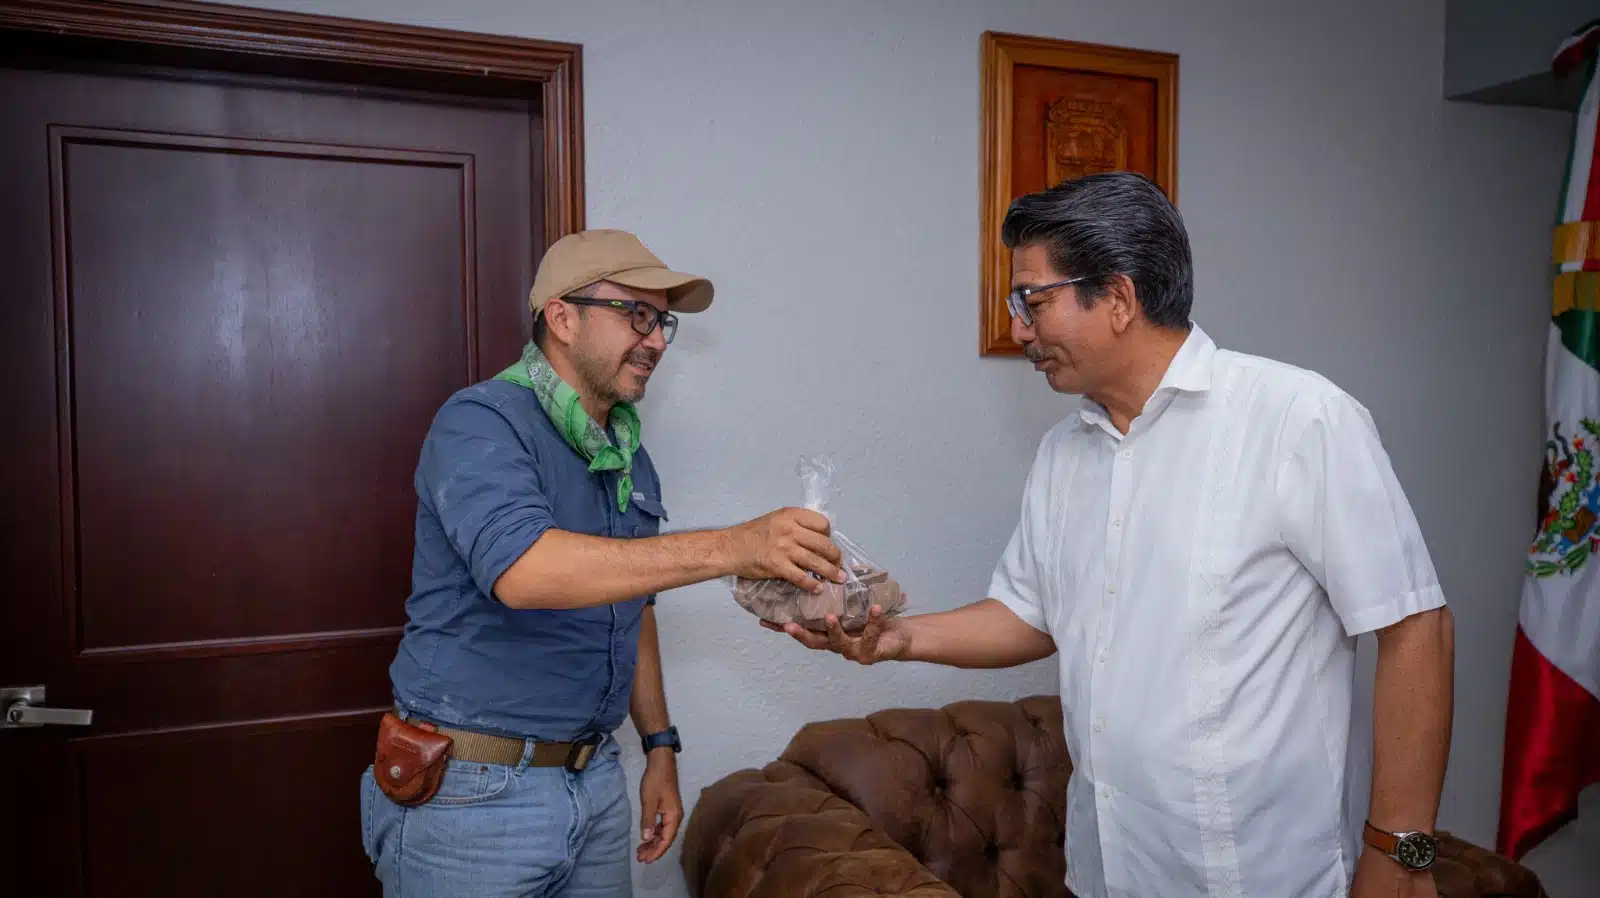 Arqueólogo mexicano José Rodrigo Vivero Miranda junto al alcalde Martín Ahumada Quintero